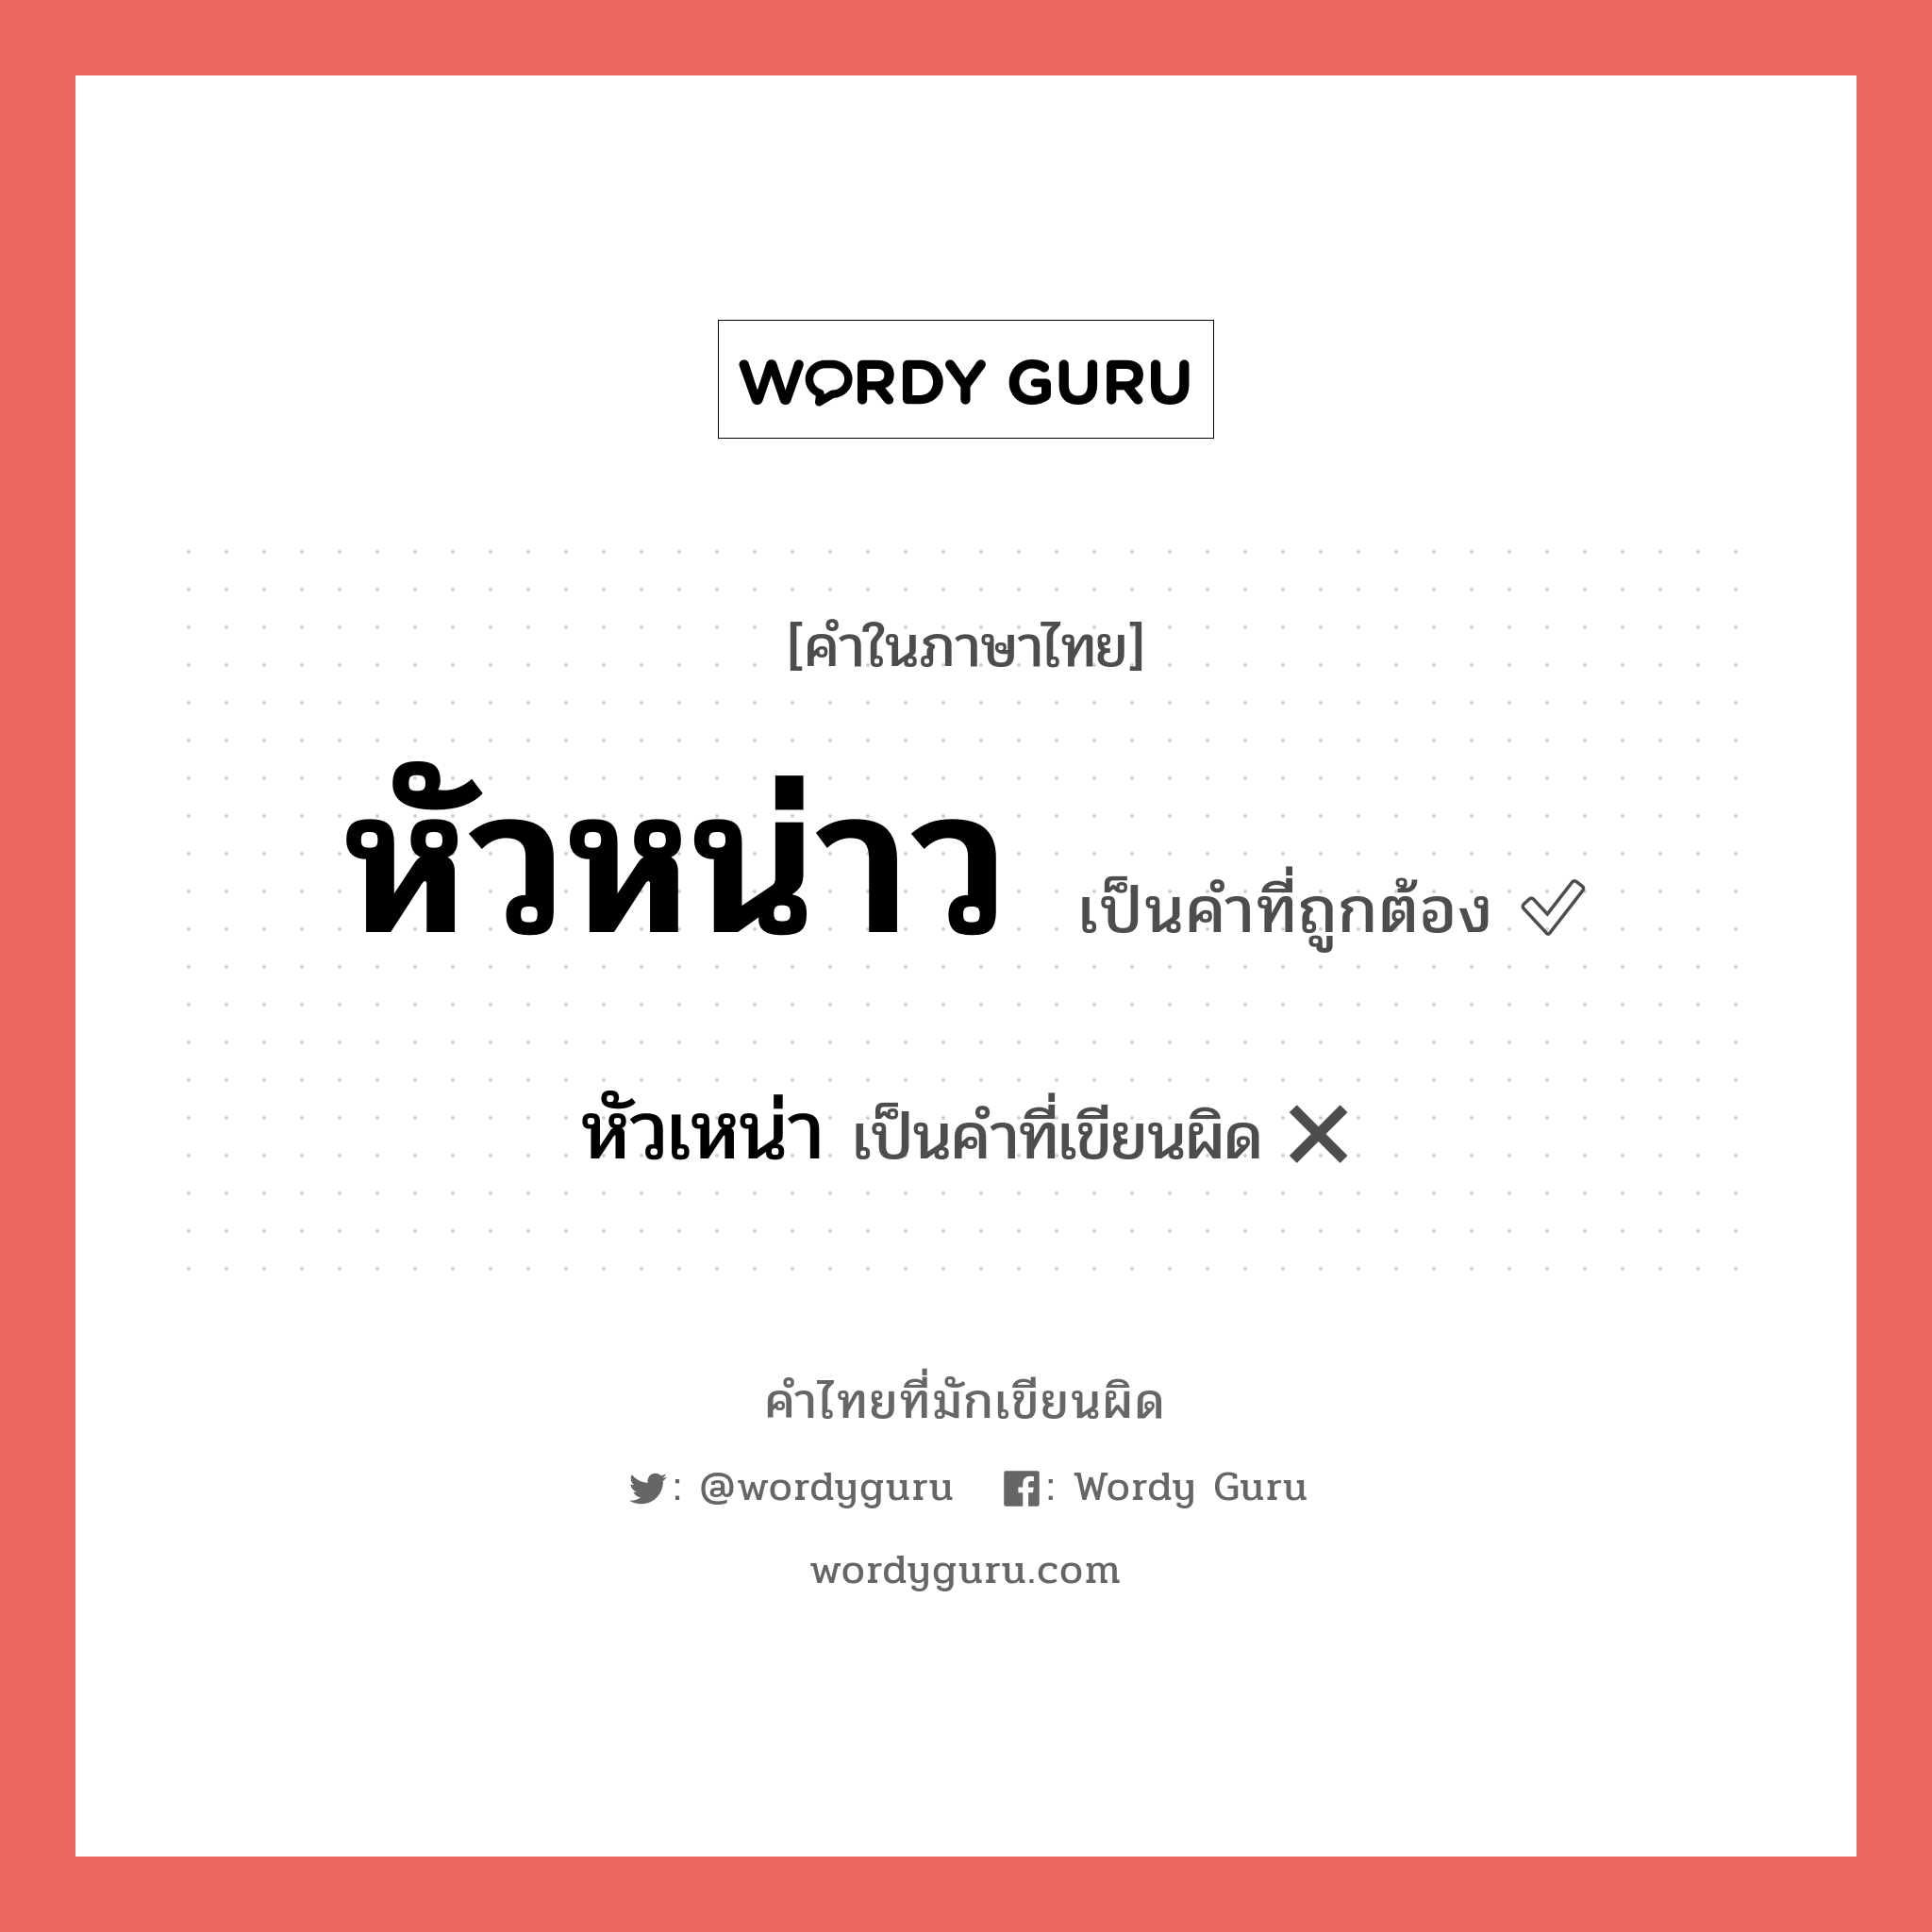 หัวหน่าว หรือ หัวเหน่า คำไหนเขียนถูก?, คำในภาษาไทยที่มักเขียนผิด หัวหน่าว คำที่ผิด ❌ หัวเหน่า